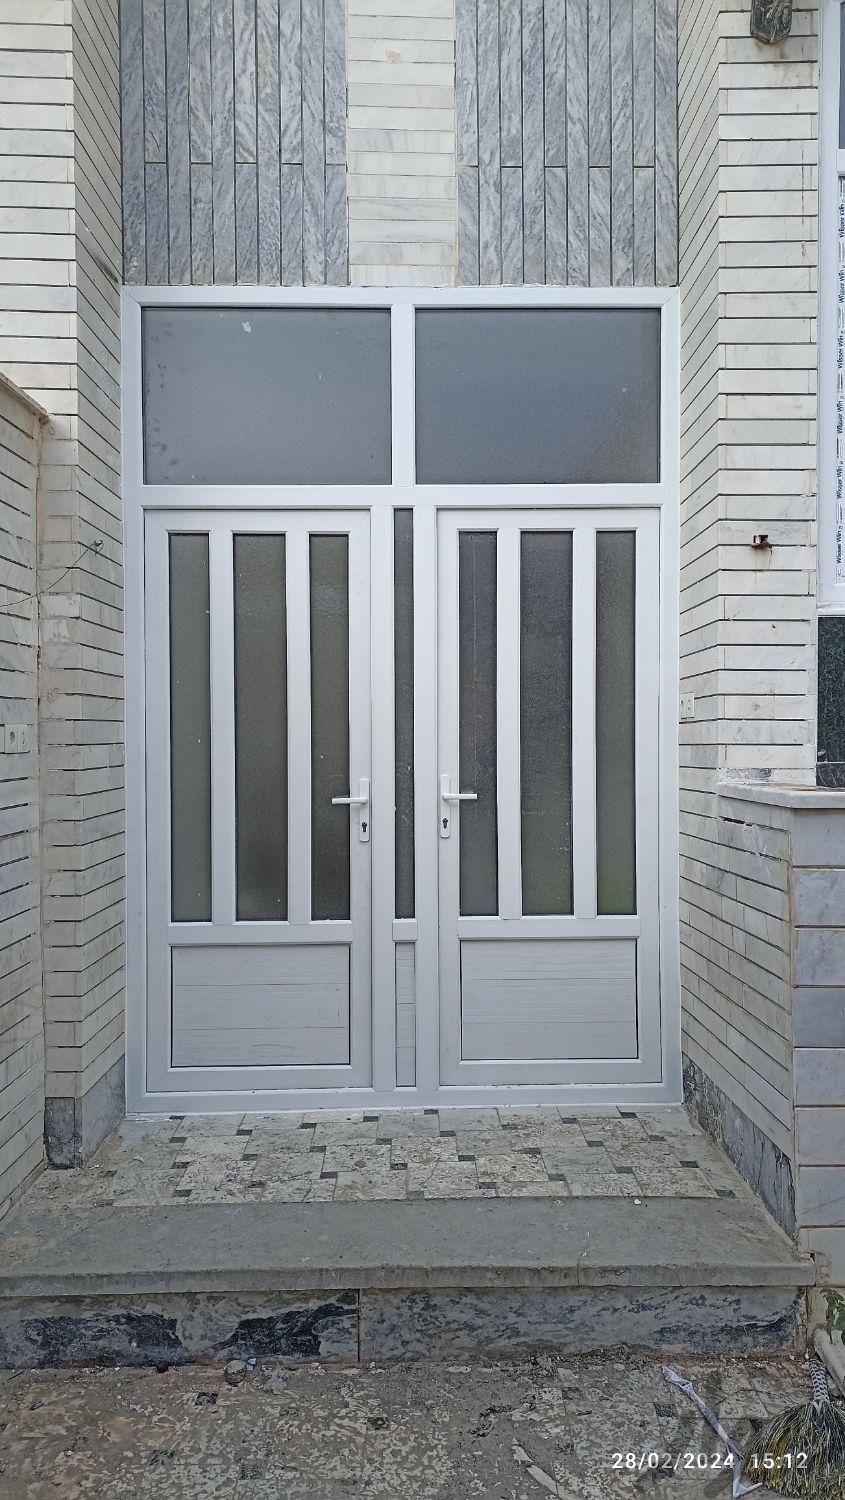 درب و پنجره دوجداره - UPVC|مصالح و تجهیزات ساختمان|قم, پلیس|دیوار